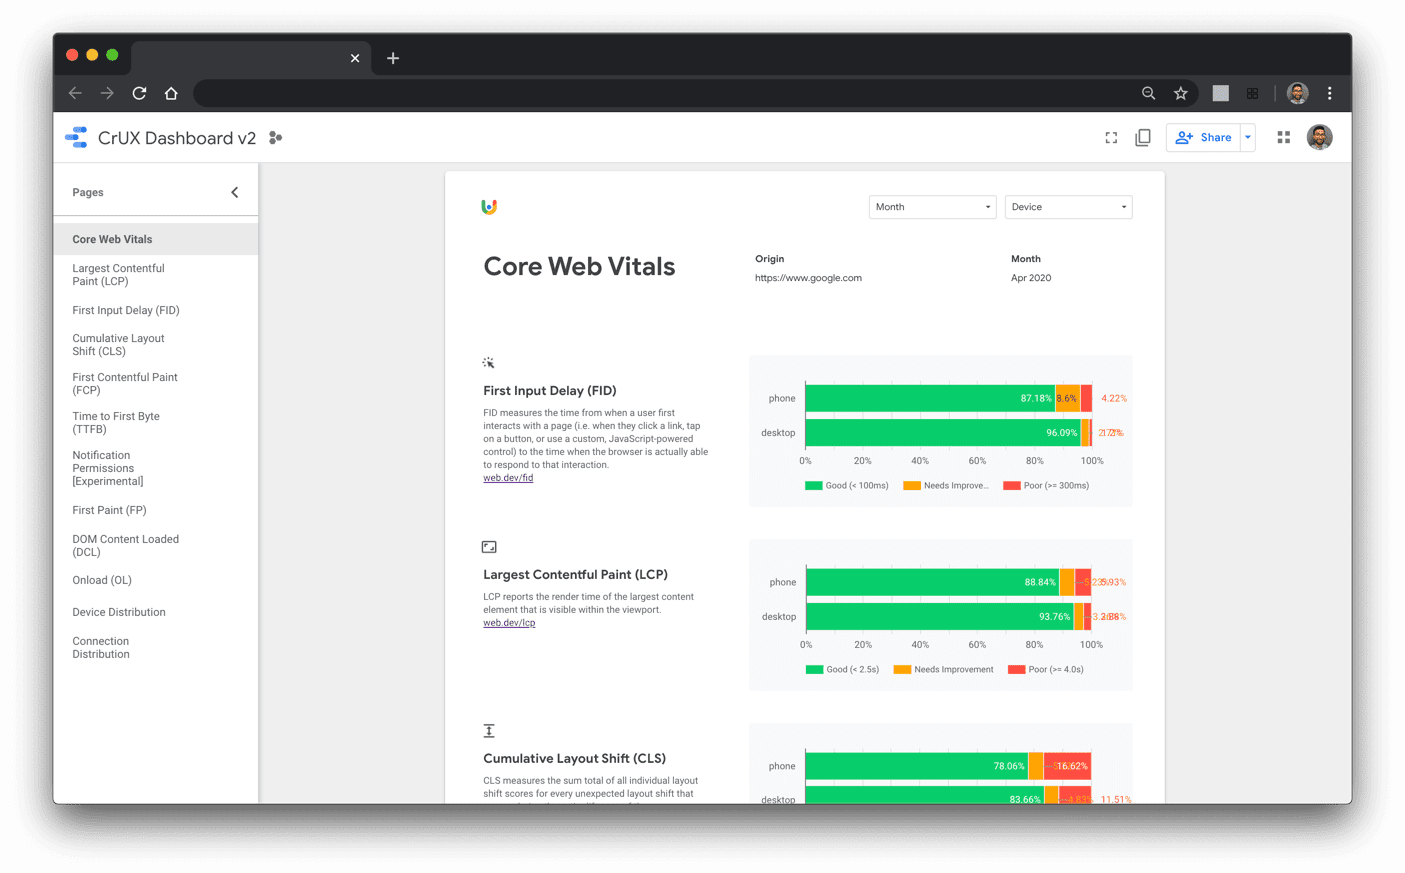 لوحة بيانات تقرير تجربة المستخدم في Chrome تعرض مقاييس &quot;مؤشرات أداء الويب الأساسية&quot; في صفحة مقصودة جديدة